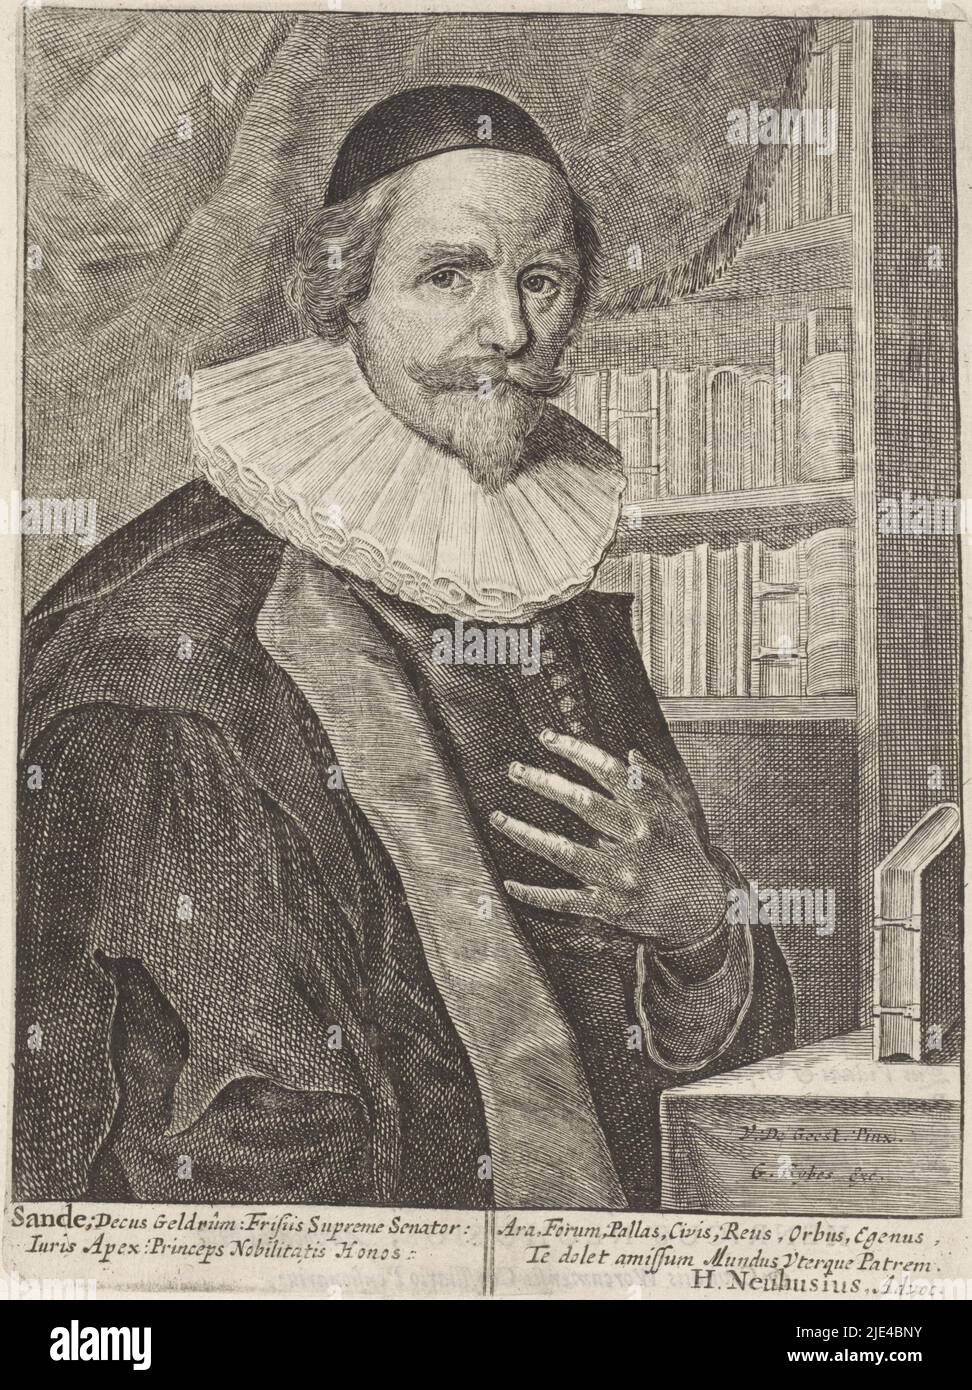 Portrait de l'avocat Johan van den Sande, Salomon Savery (peut-être),  d'après Wybrand de Geest (I), 1638 - 1660, imprimeur: Salomon Savery,  (peut-être), d'après: Wybrand de Geest (I), (mentionné sur l'objet),  Henricus Neuhusius, (